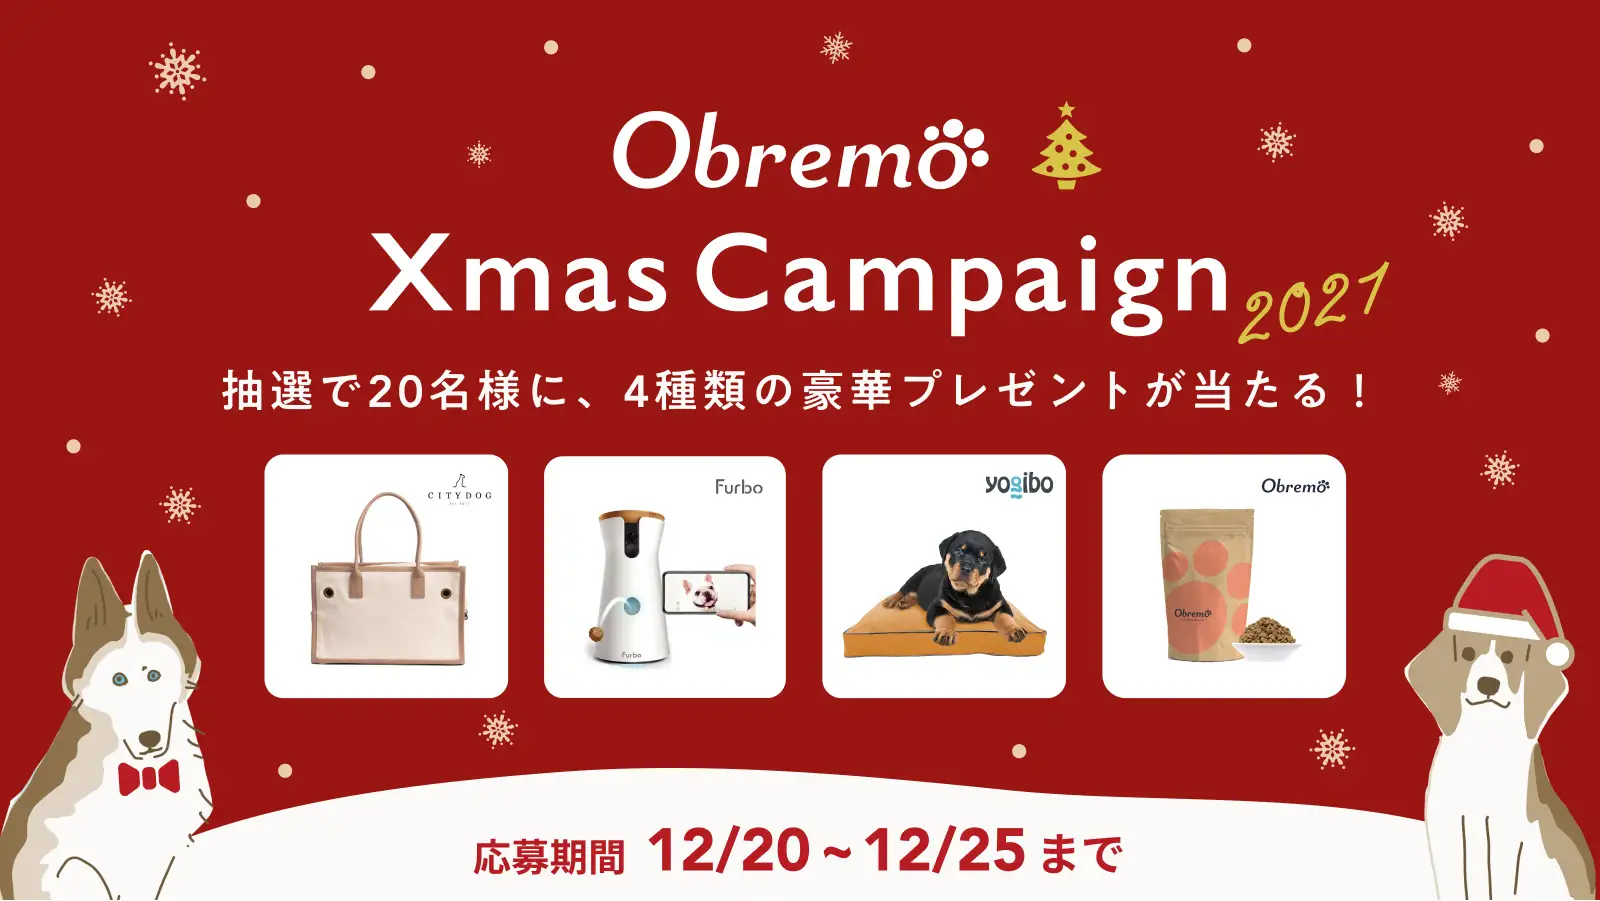 Obremo Xmas Campaign 2021。抽選で20名様に、4種類の豪華プレゼントが当たる！応募期間：12/20~12/25まで。商品の4枚の写真と2匹の犬のイラストが描かれている。